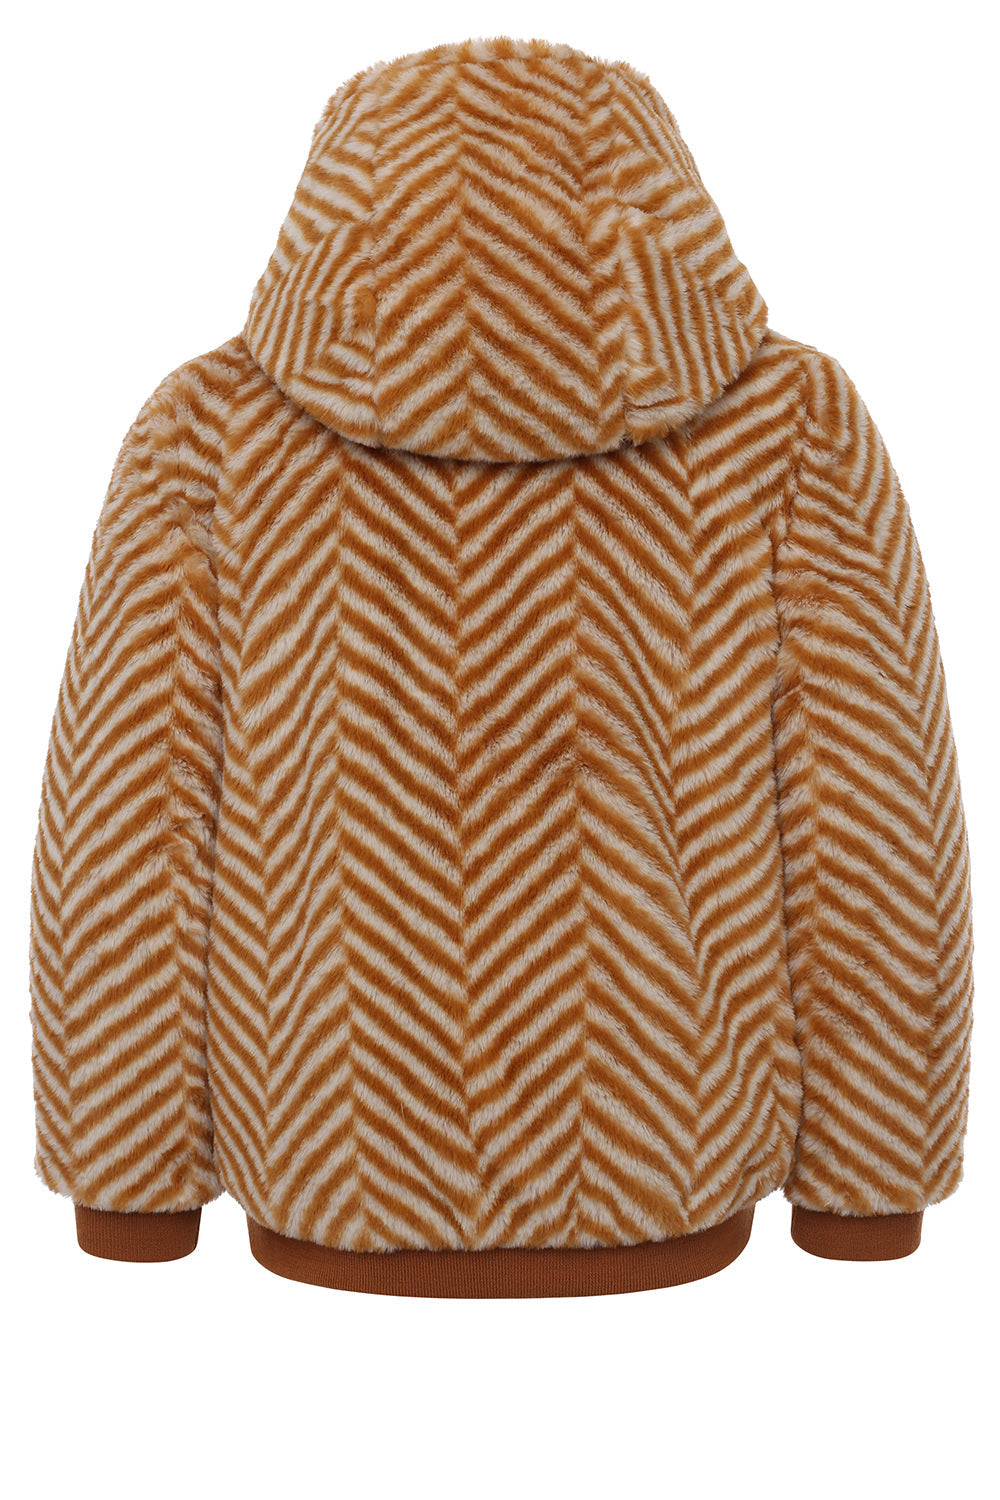 Meisjes Reversible Fur Jacket van Looxs Little in de kleur Cinnamon in maat 128.